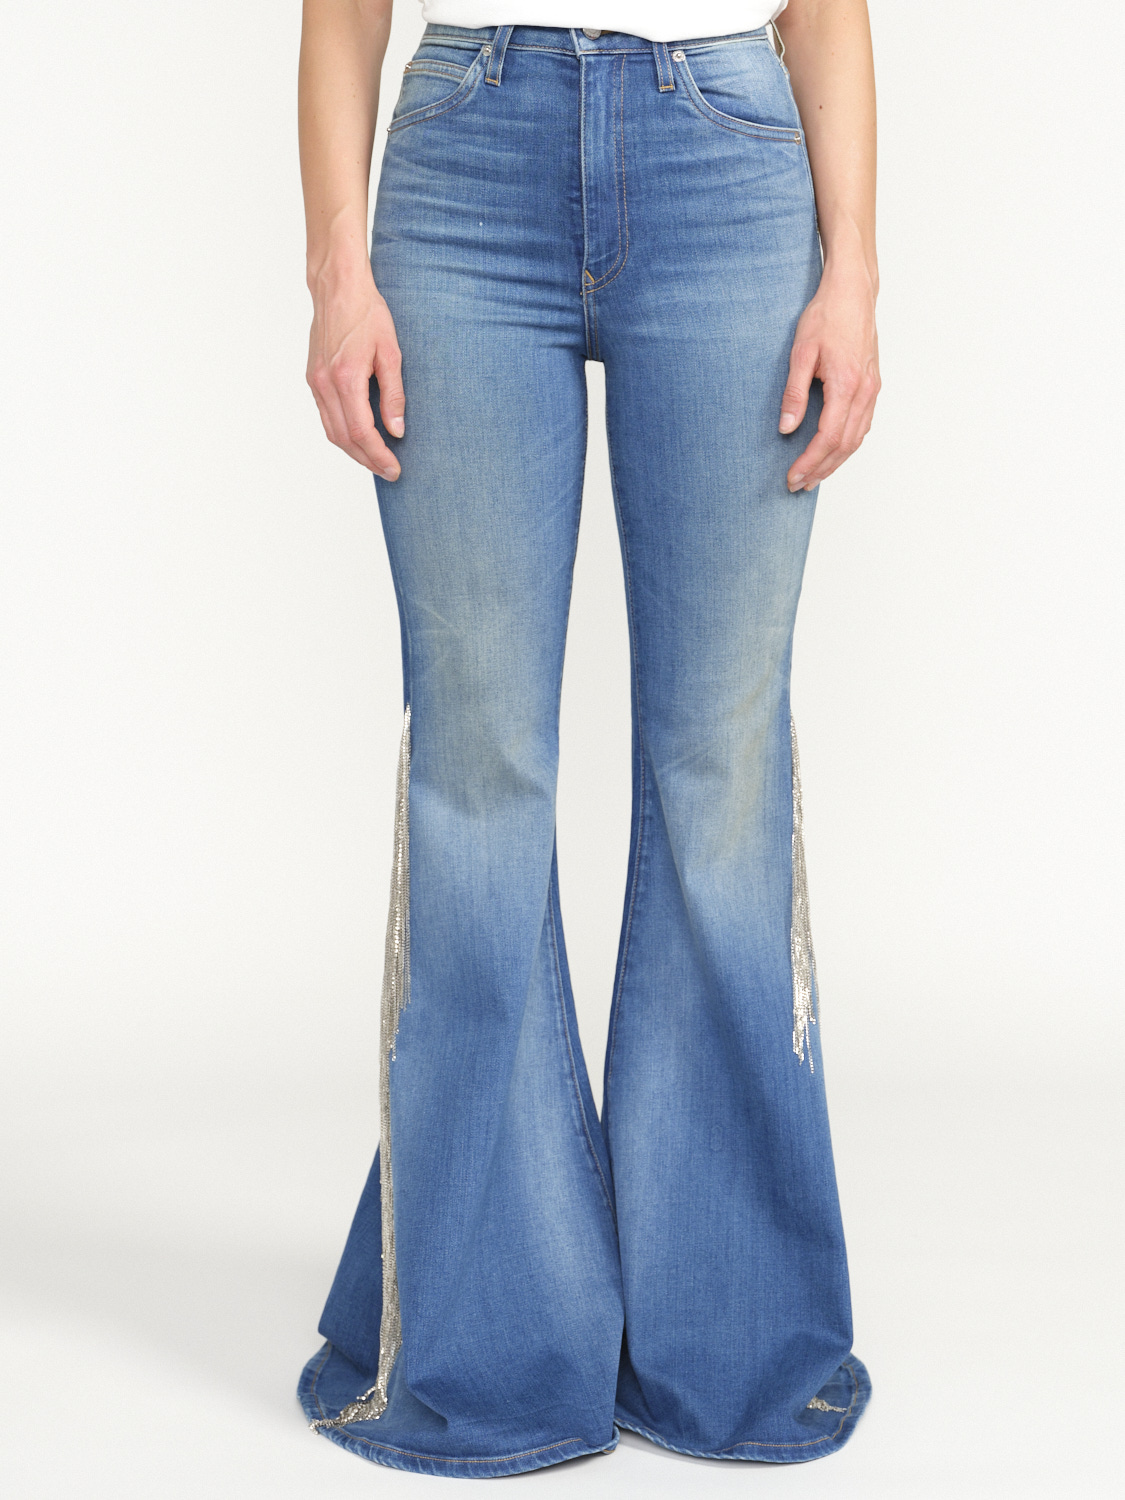 Cout De La Liberte Heidi - Jeans a vita bassa con dettagli di frange glitterate blu 25